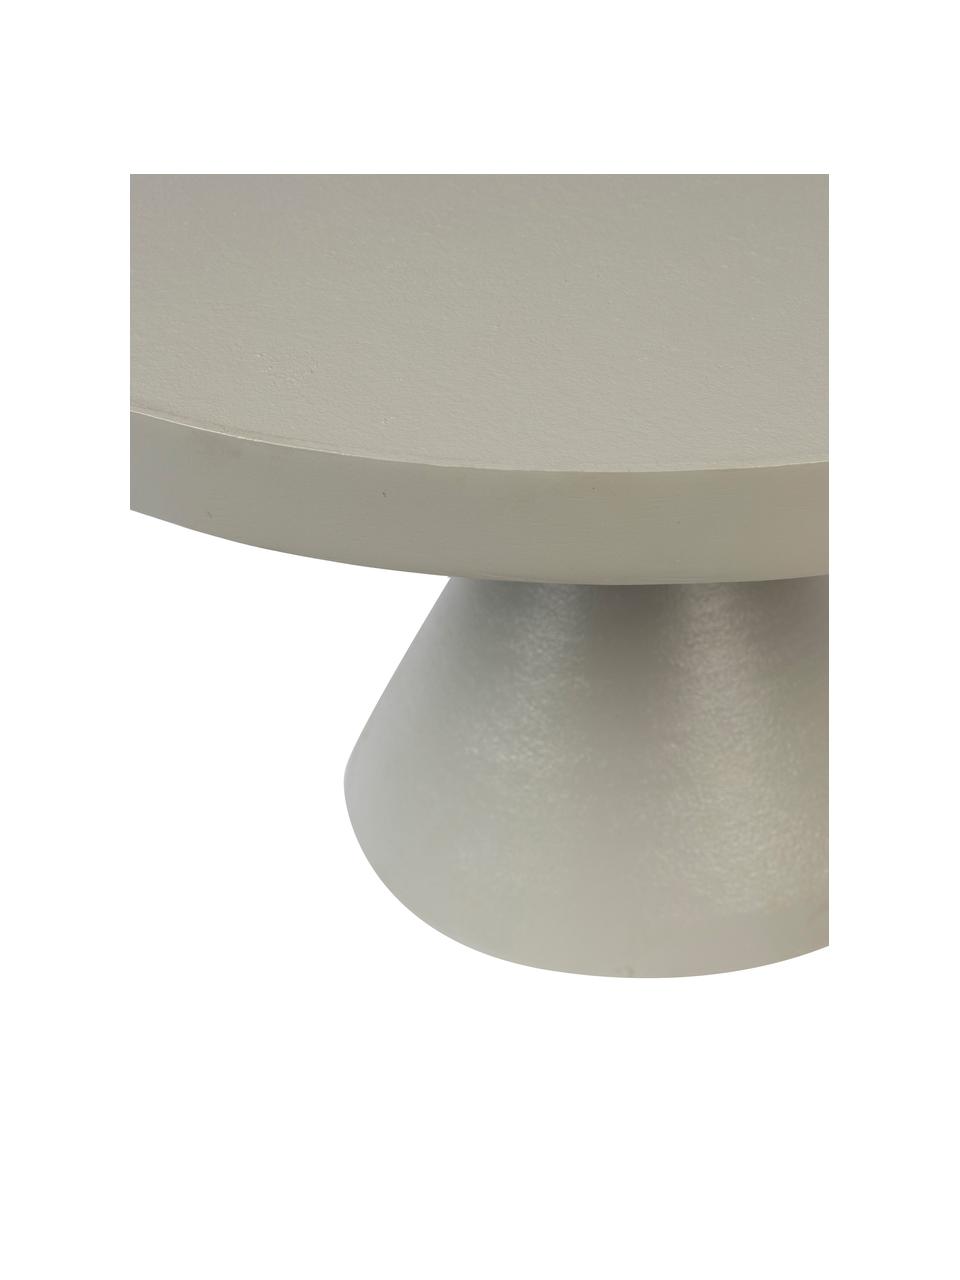 Metall-Couchtisch Floss in Grau, Aluminium, pulverbeschichtet, Grau, Ø 60 x H 33 cm